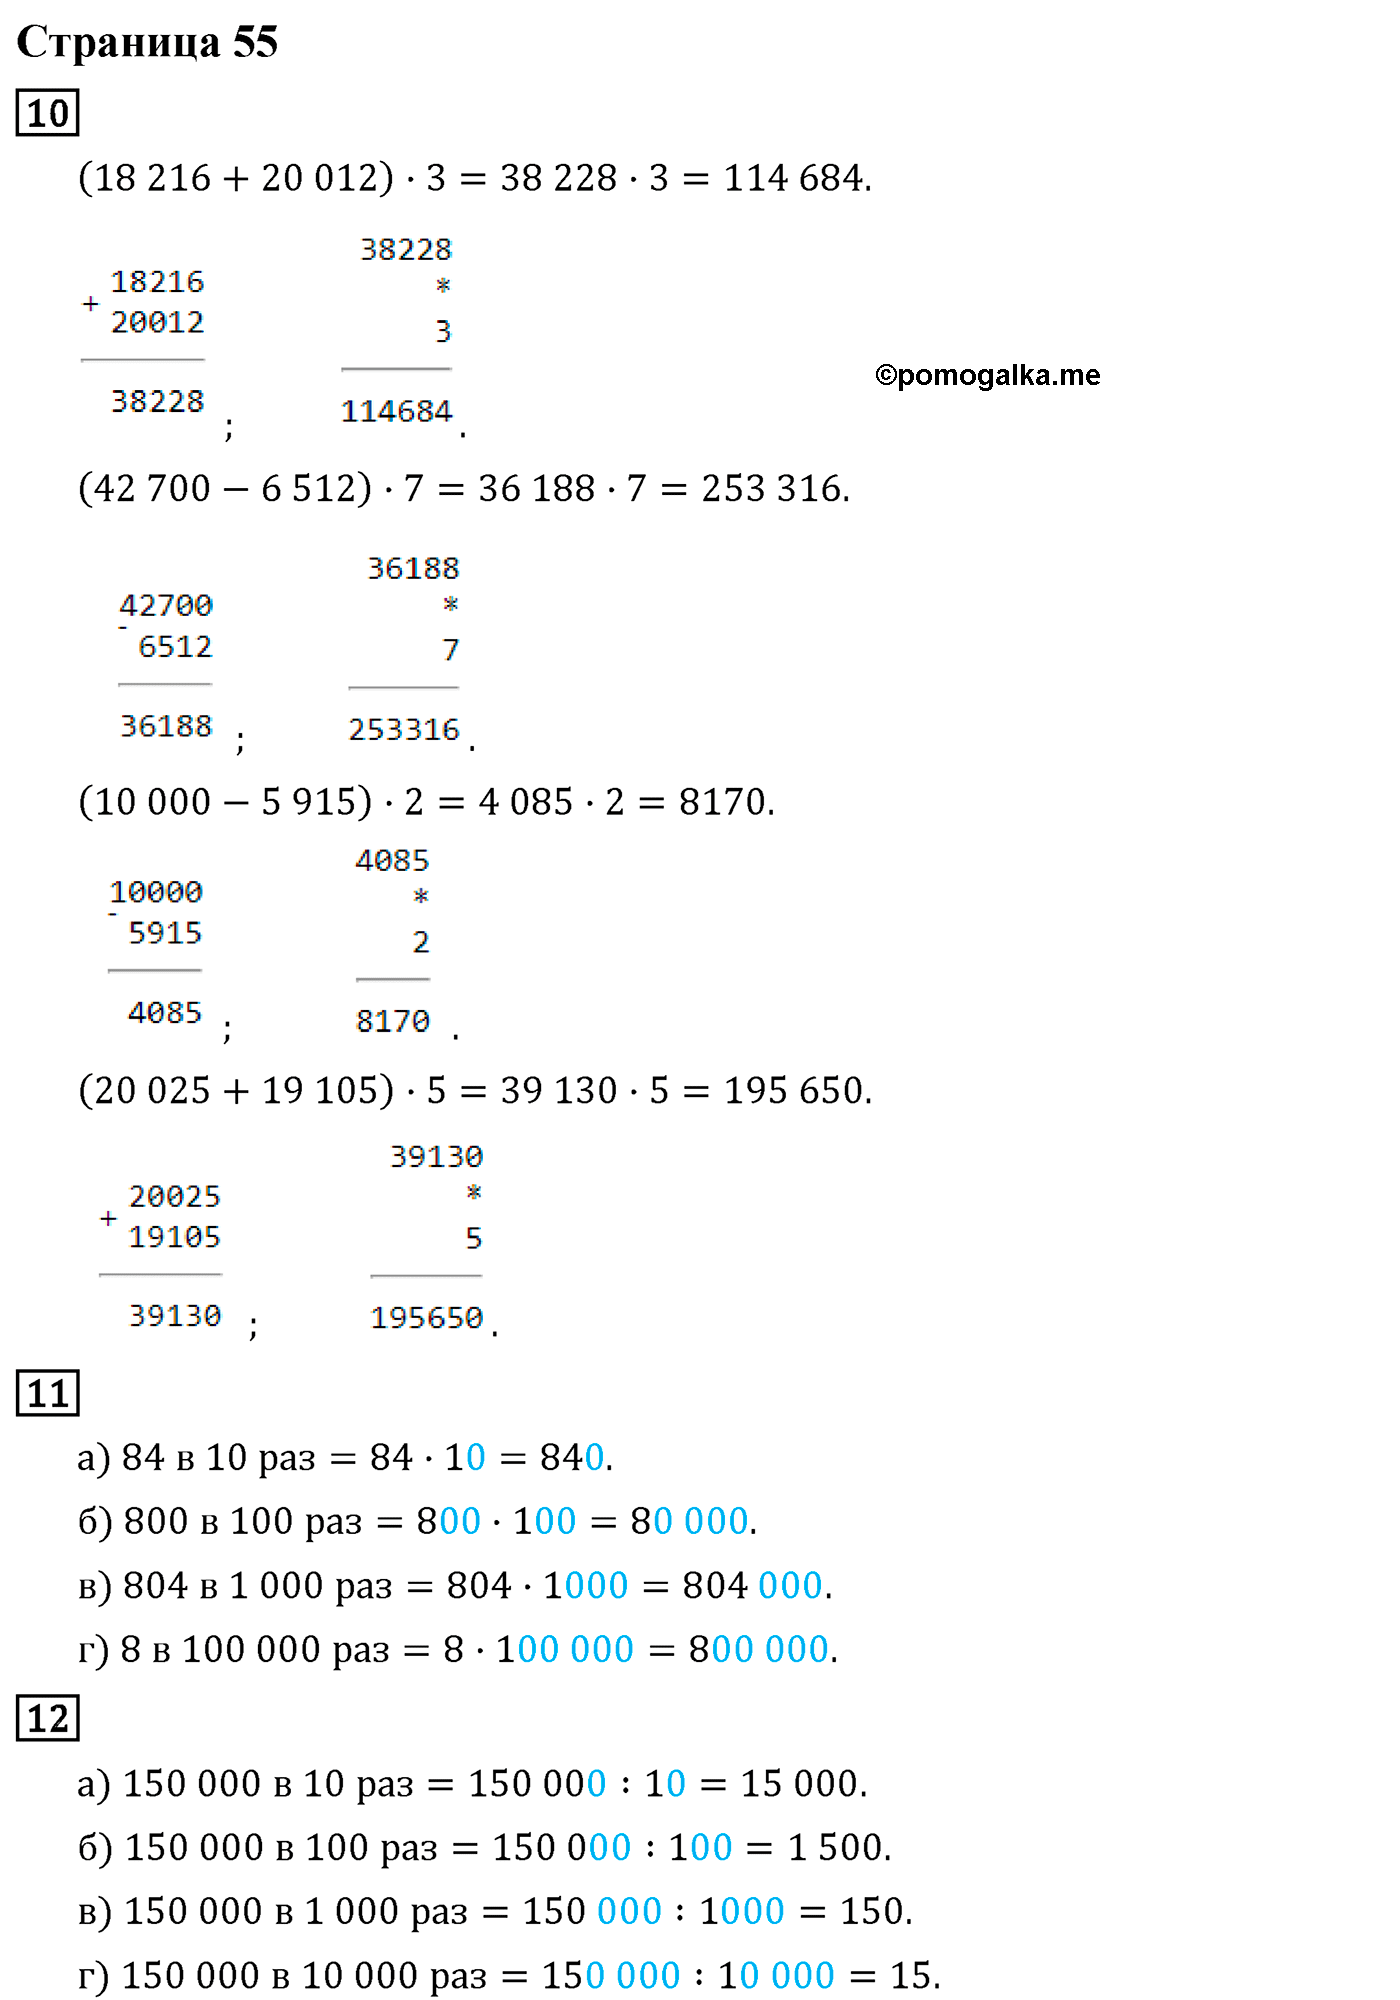 Страница №55 Часть 2 математика 4 класс Дорофеев